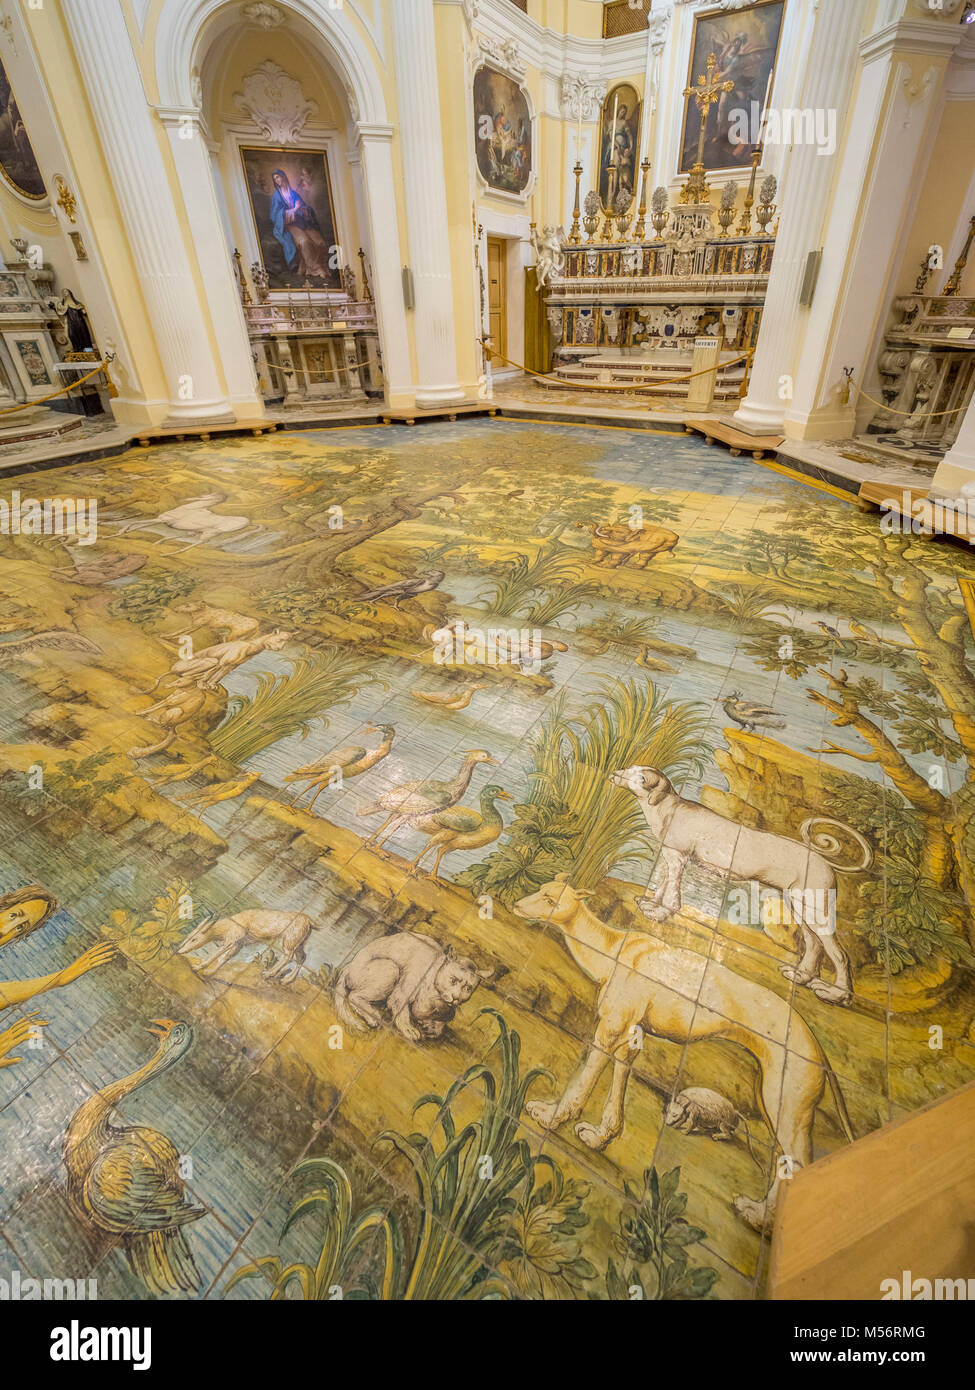 Interior de la Iglesia de San Miguel en Anacapri, el piso de mosaico por Leonardo Chiaiese. Foto de stock